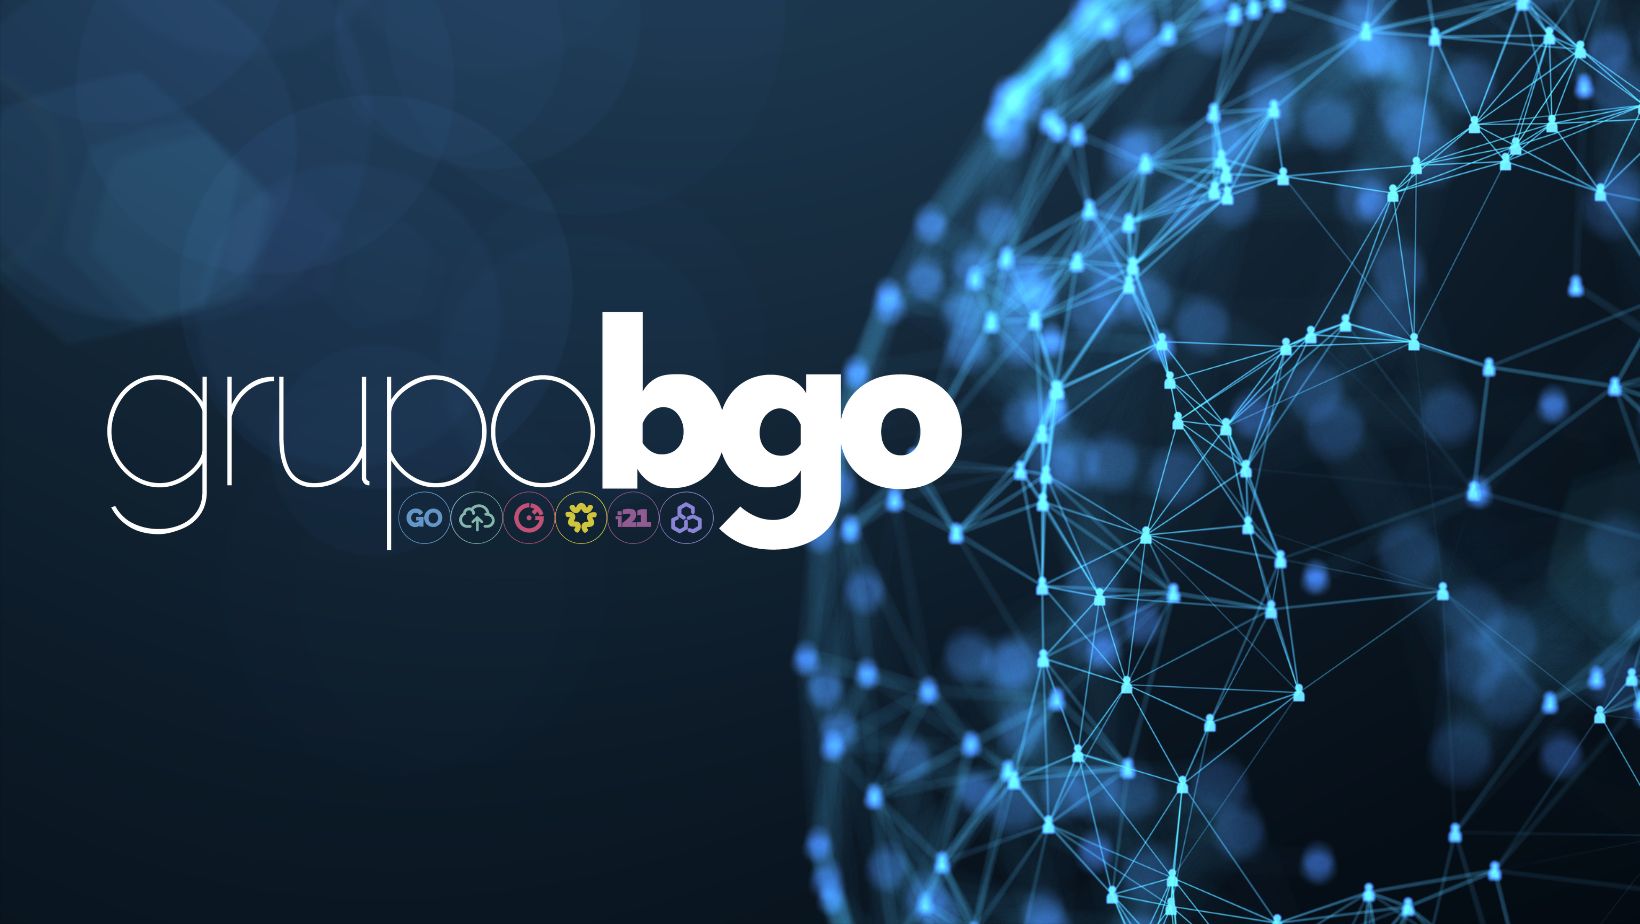 GrupoBGO anuncia una colaboración con la consultora Gartner para elevar su estrategia empresarial en 2024